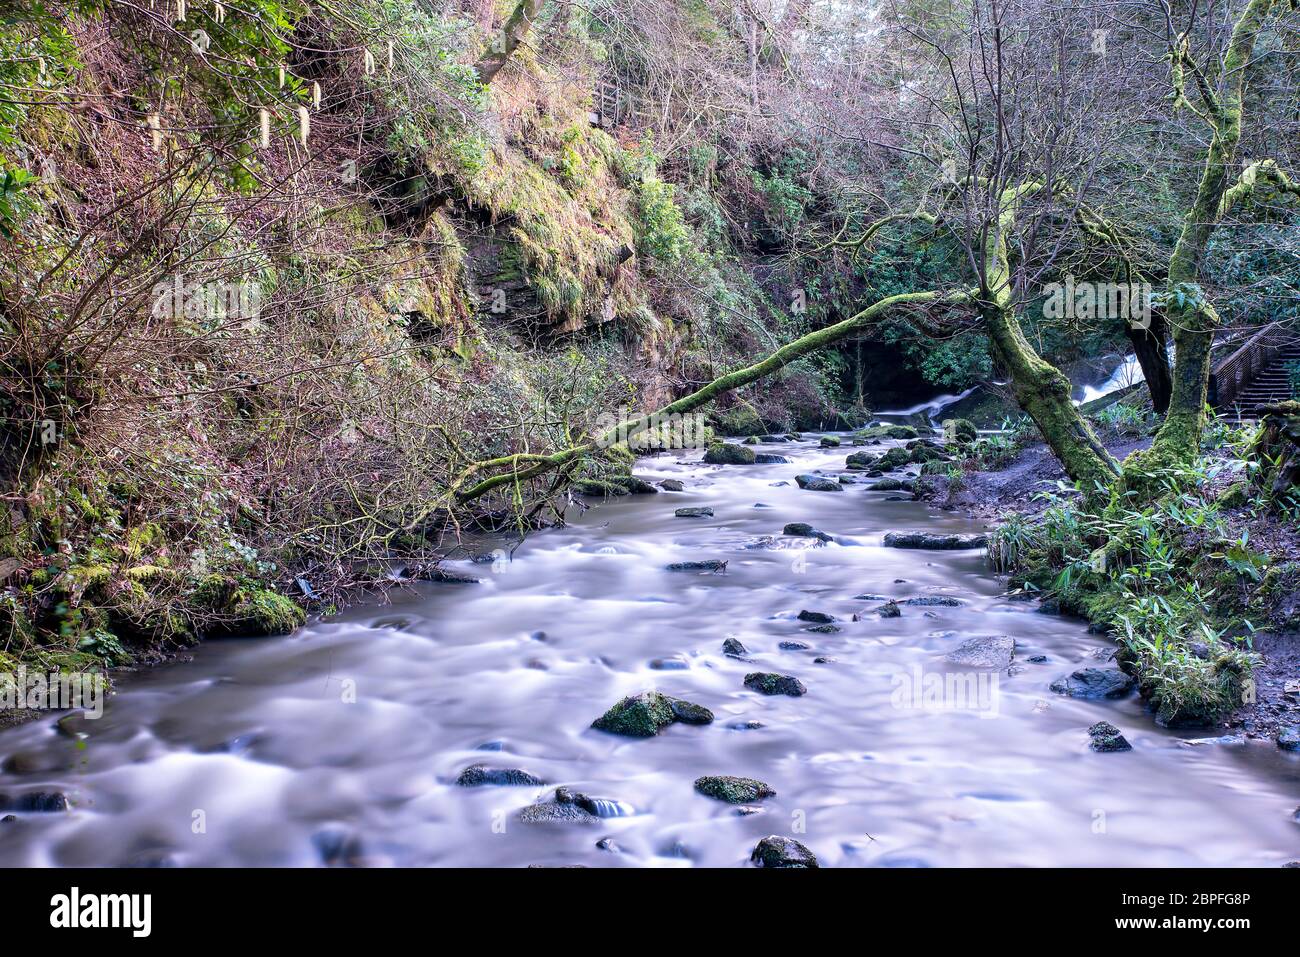 long exposure of a river in Rouken Glen Park, Glasgow, UK Stock Photo